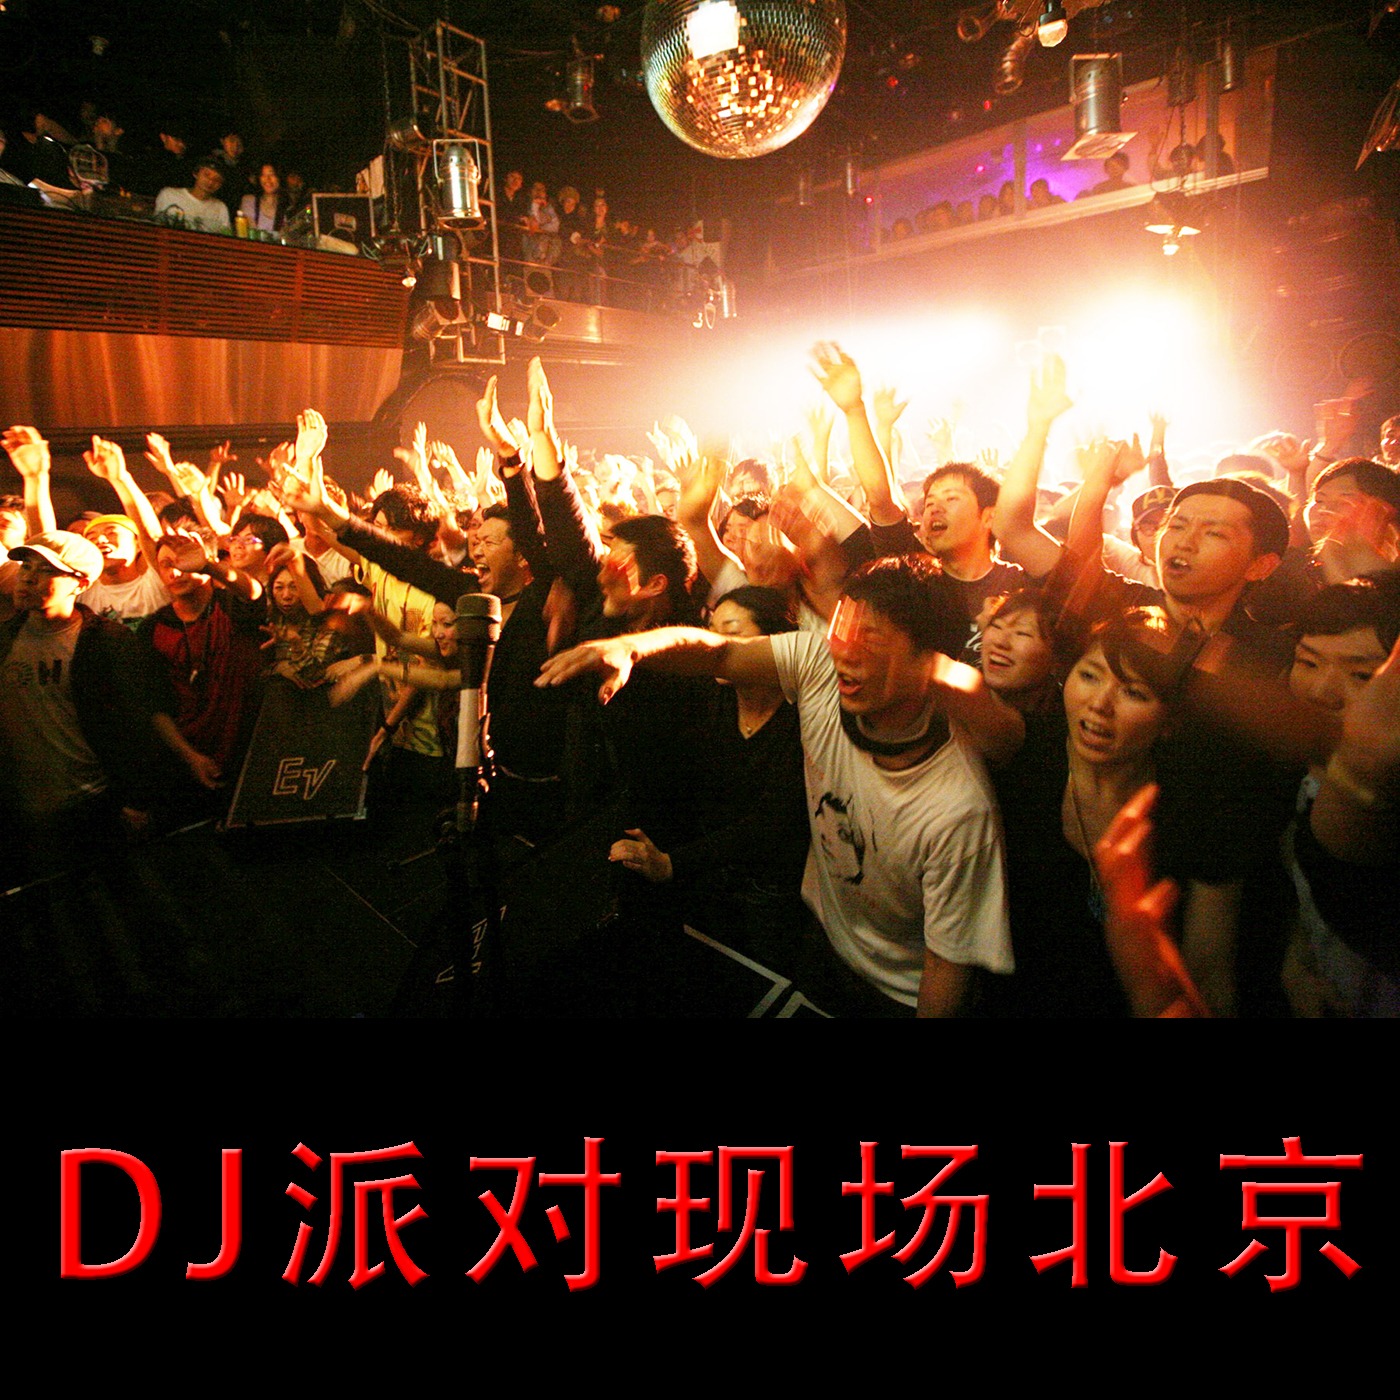 DJ派对现场北京